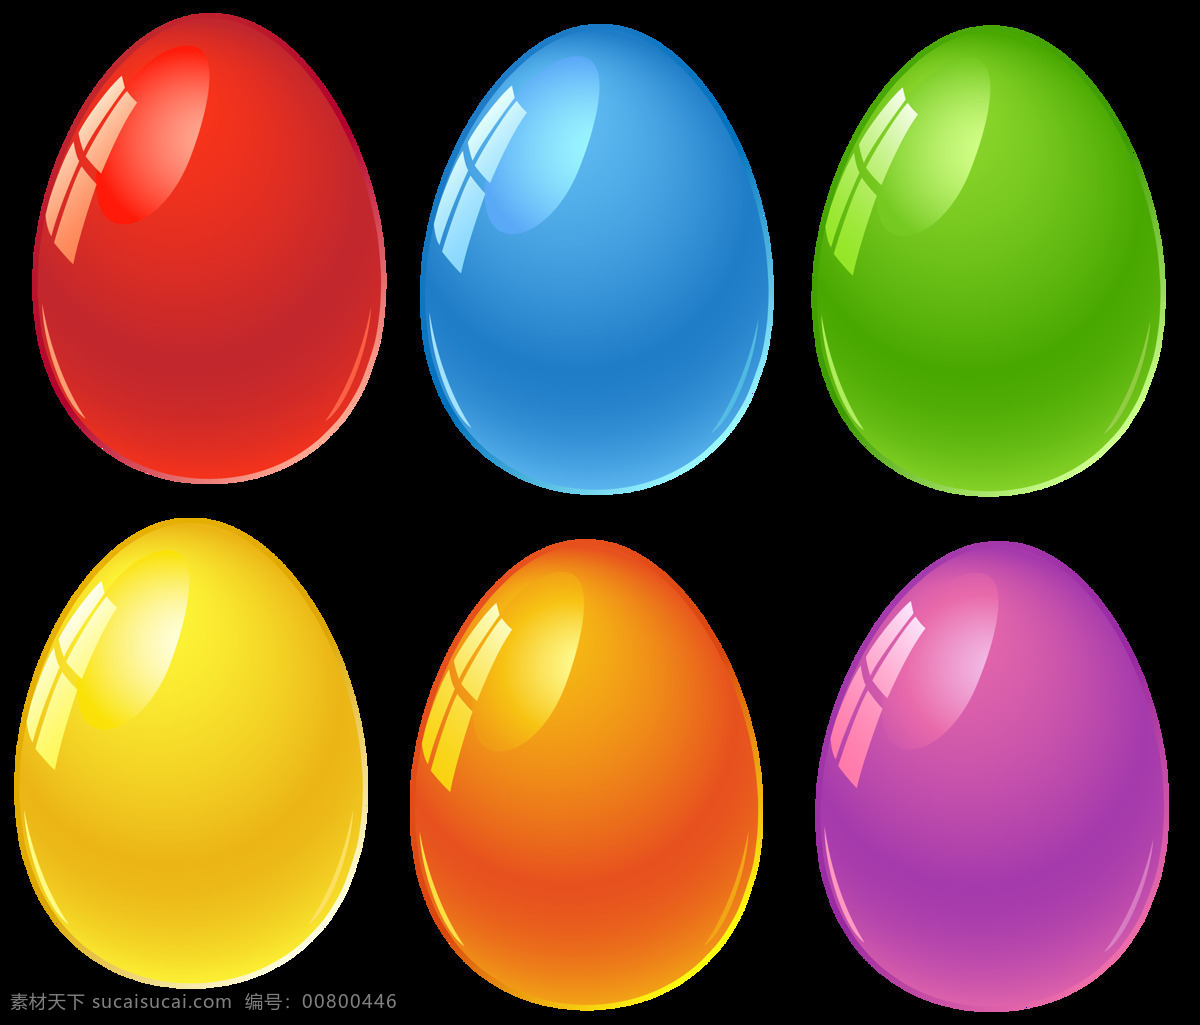 各种 颜色 彩蛋 免 抠 透明 图 层 各种颜色彩蛋 复活节 巧克力 复活节小彩蛋 背景 素描 复活节彩蛋 手工